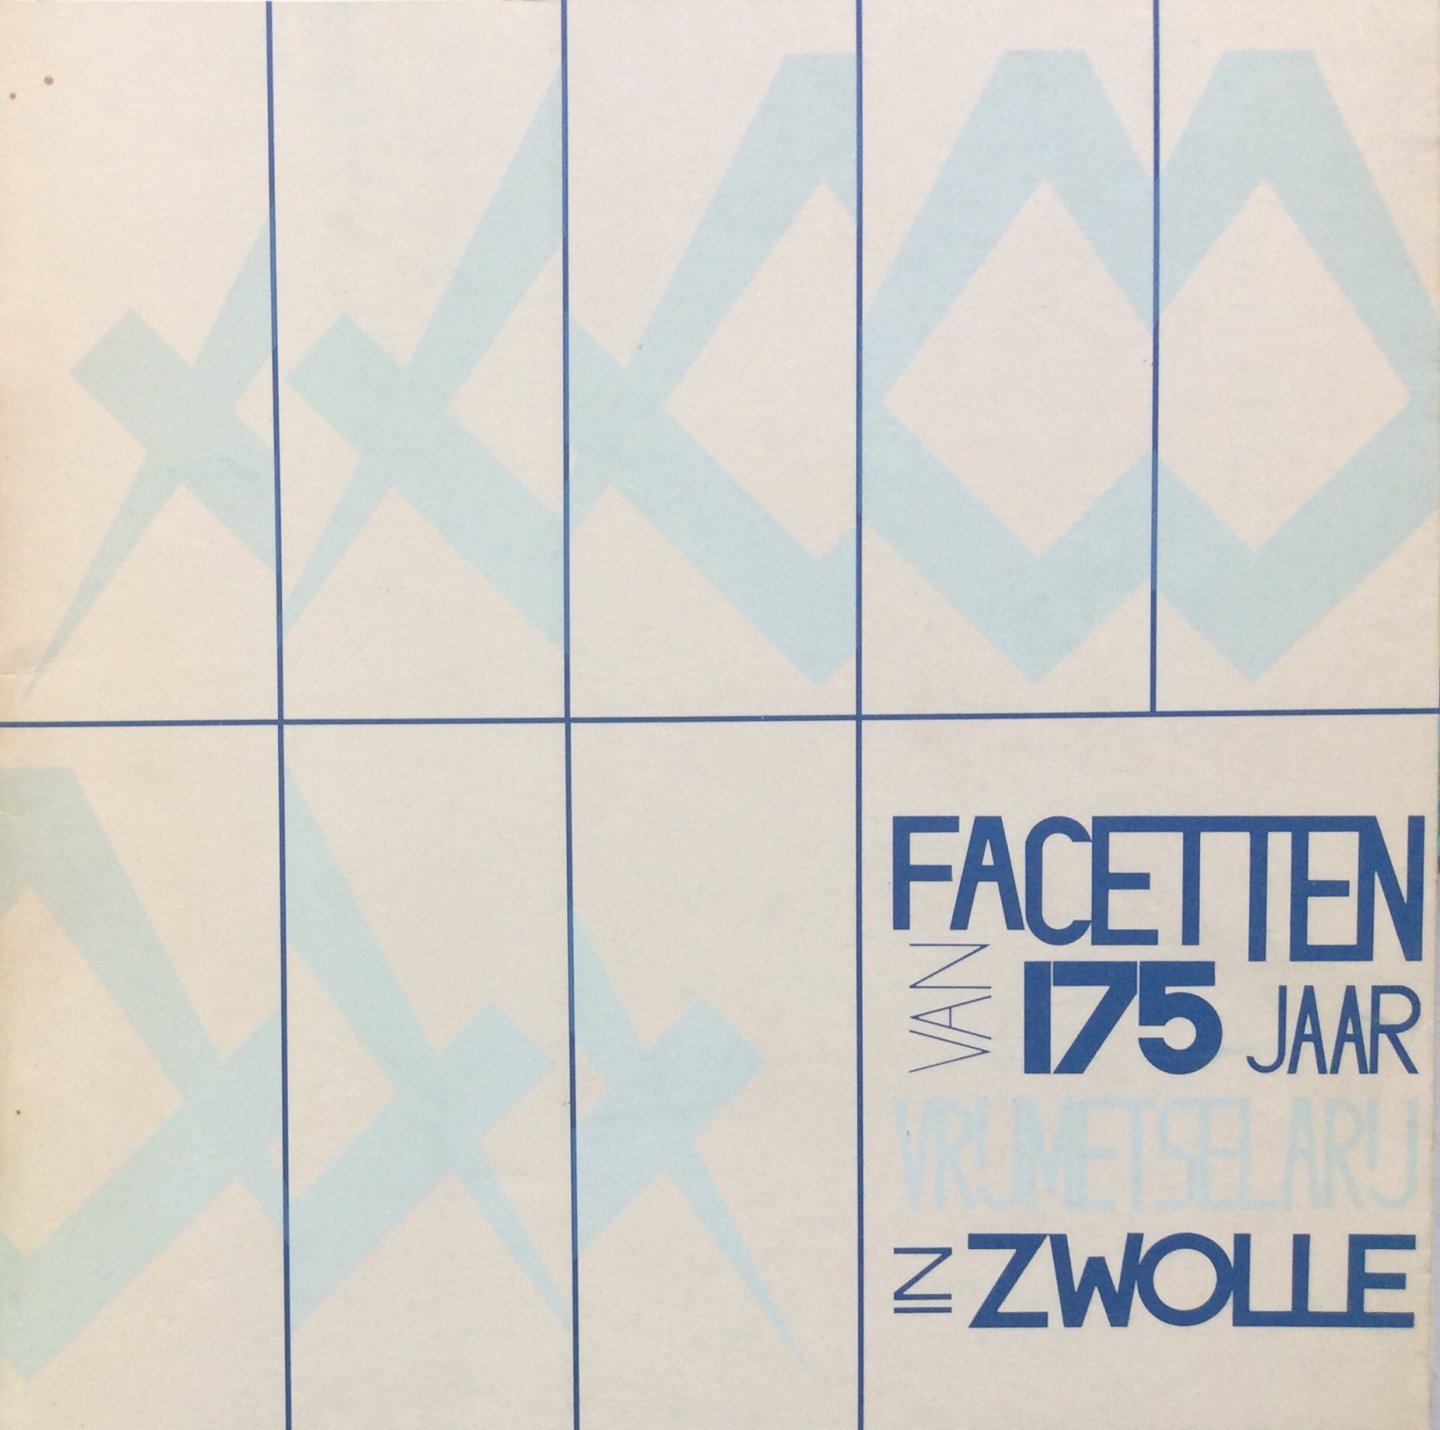 Vos, J. (tekst) en Poel, Dick van de (grafisch ontwerp) - Facetten van 175 jaar Vrijmetselarij in Zwolle